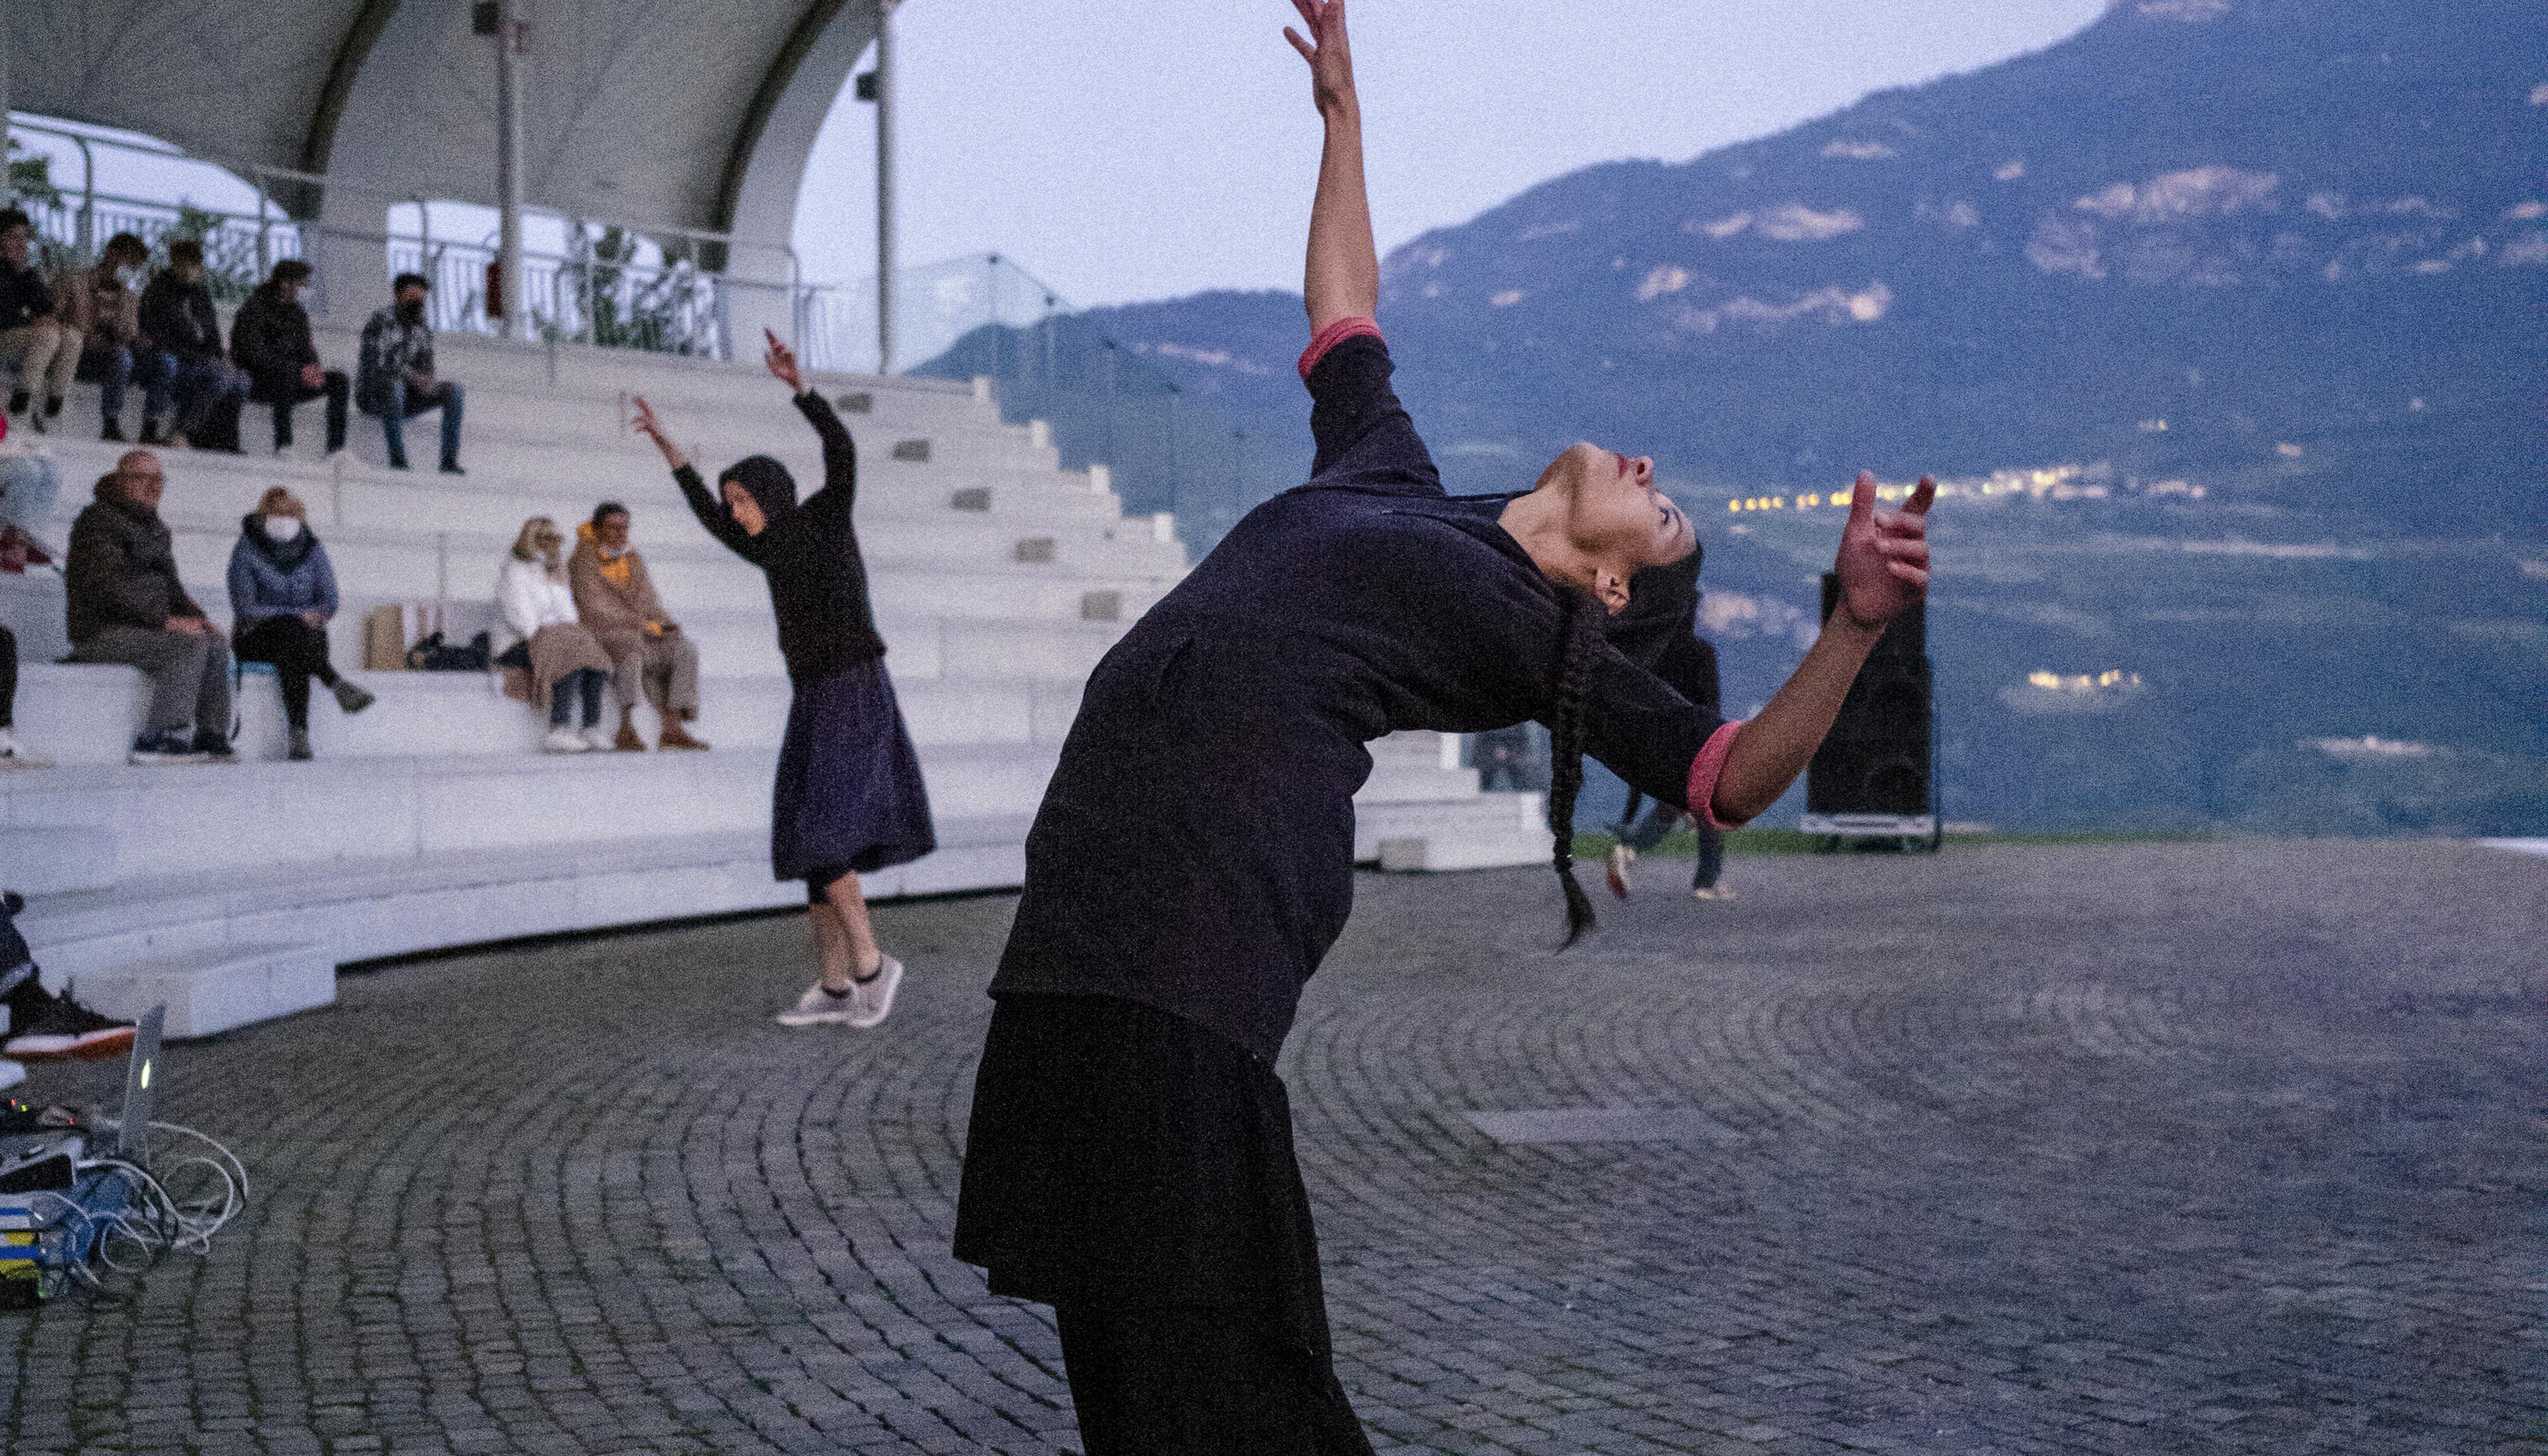 Due danzatrici durante la performance Choros di Alessio Romano alla Campana dei Caduti. La danzatrice in primo piano è in un ampio cambré indietro; braccia e corpo sbilanciati.